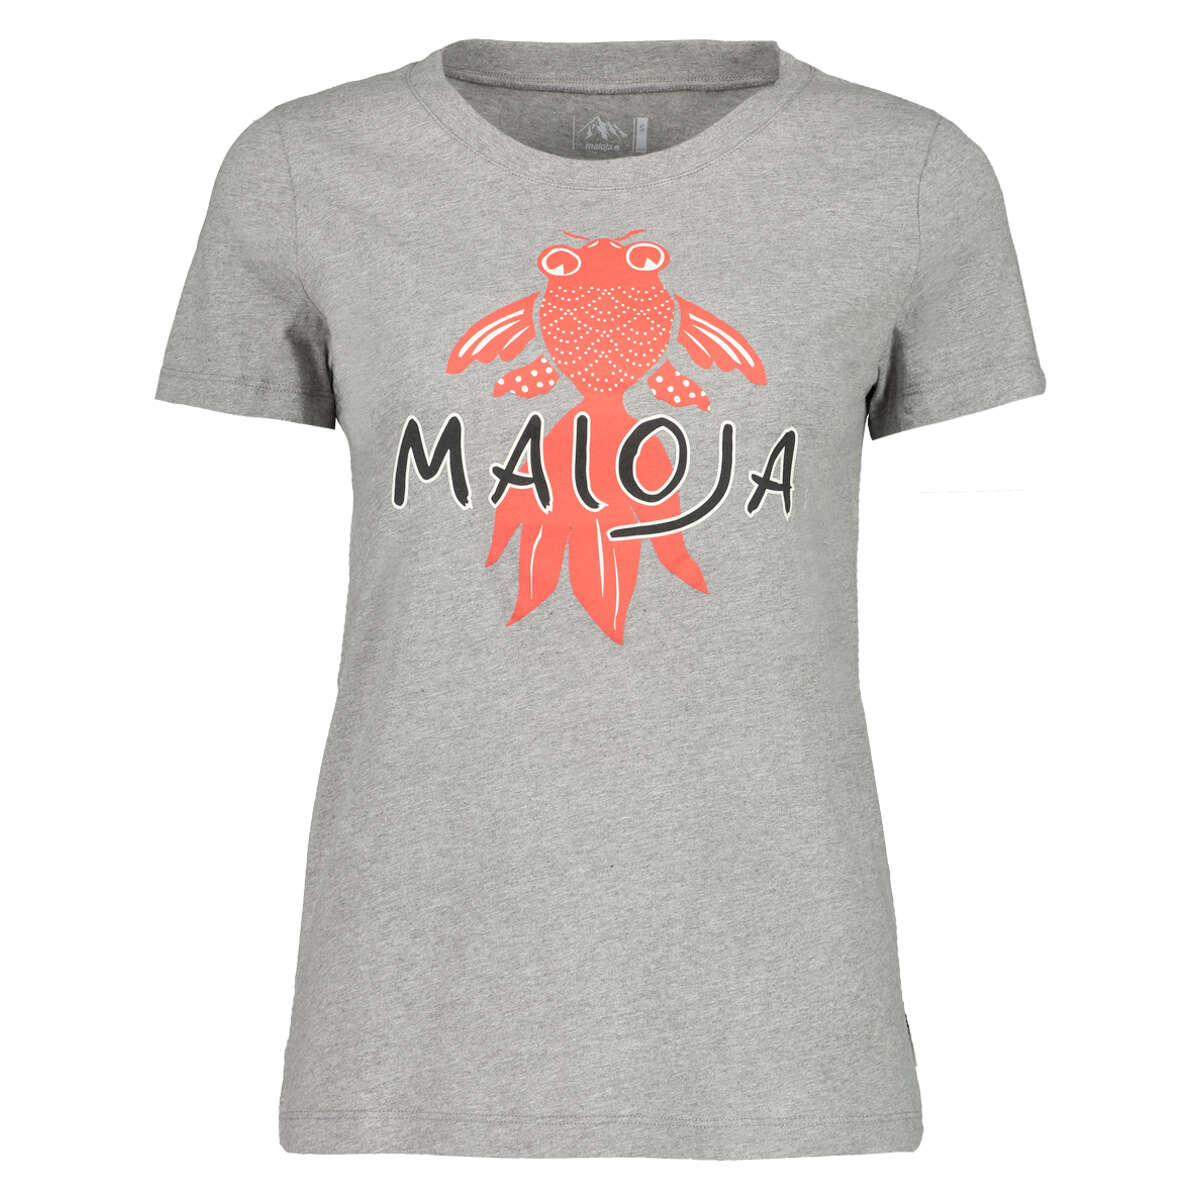 Maloja Femme T-Shirt PuorgiaM. Grey Melange